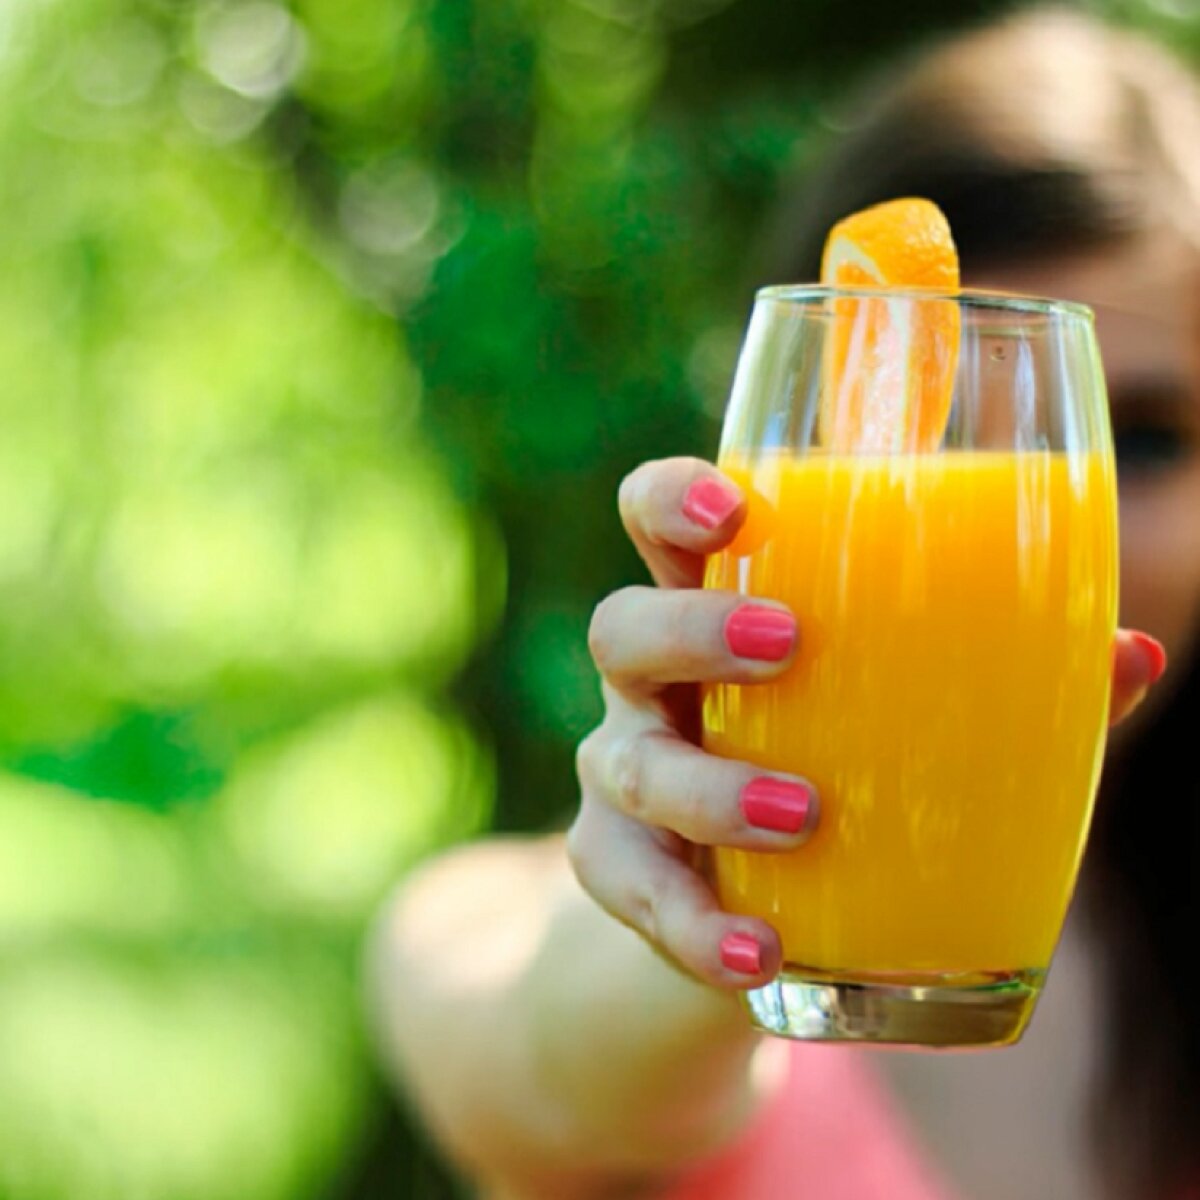 Рецепт сока из апельсинов в домашних условиях (why not!)ред | Пикабу